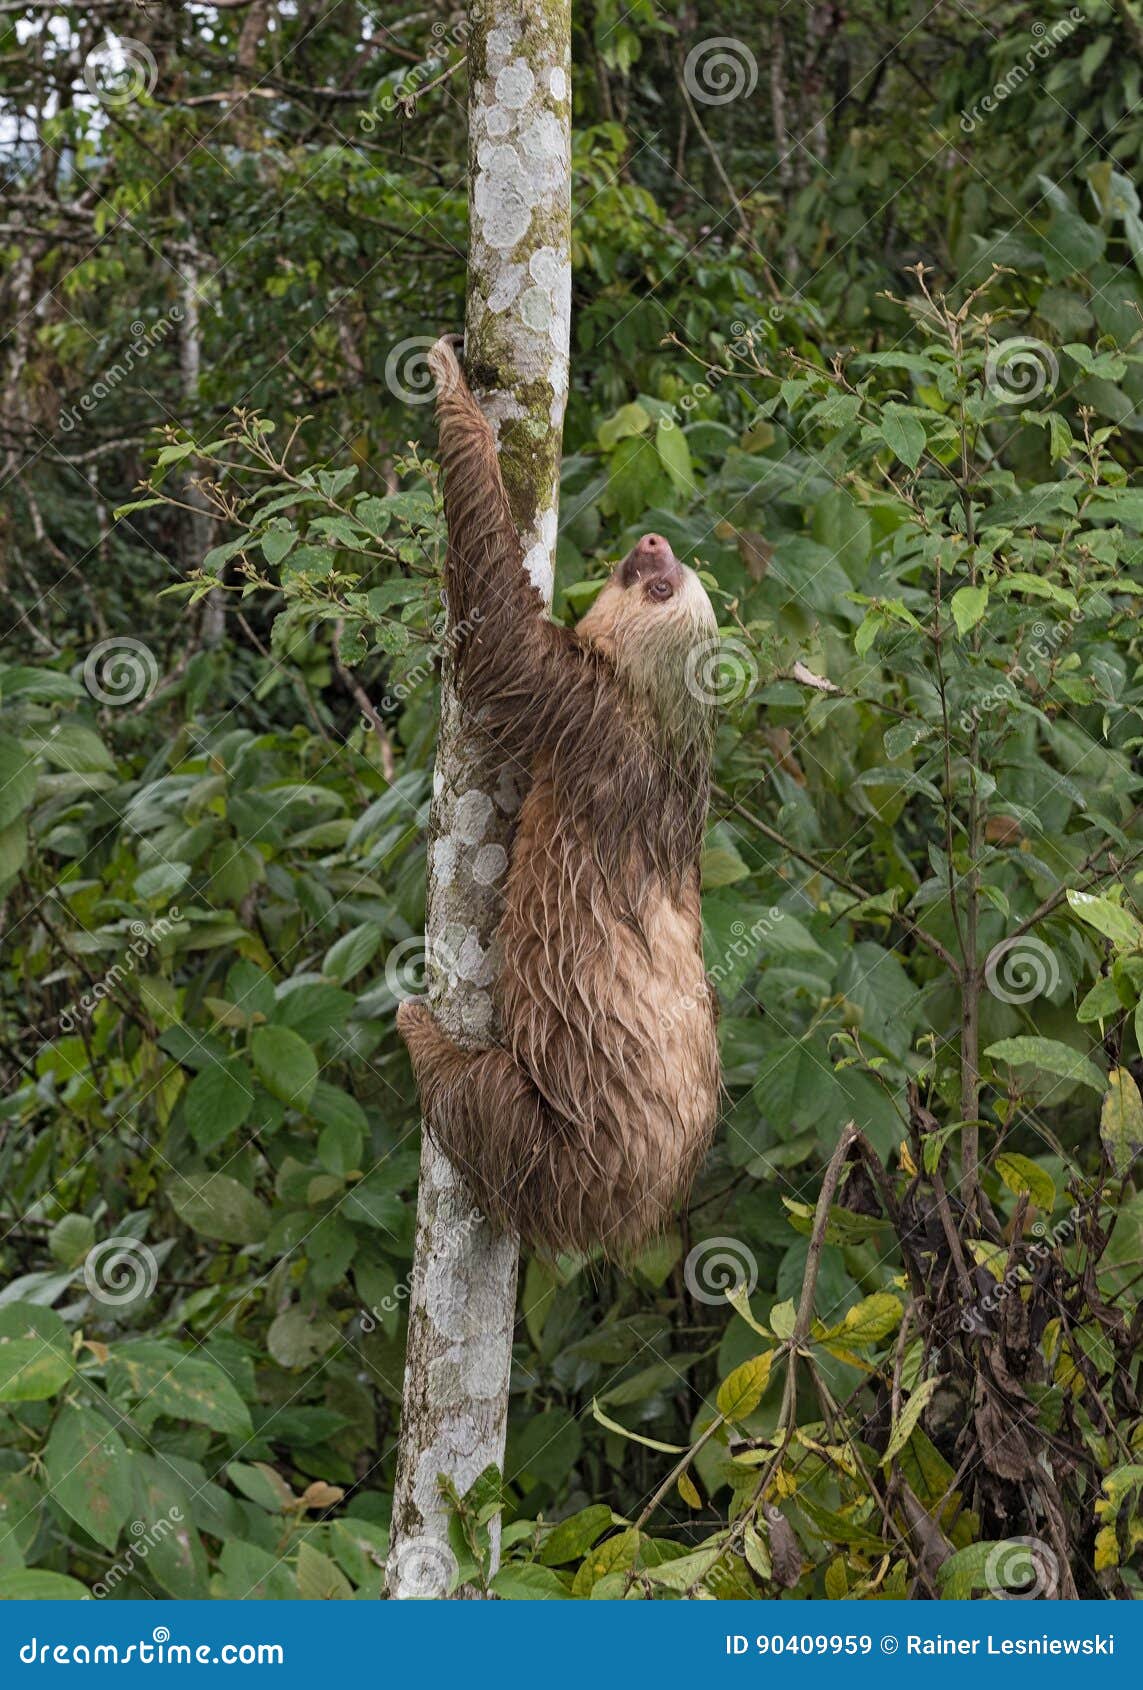 three-toed sloth at la fortuna, costa rica